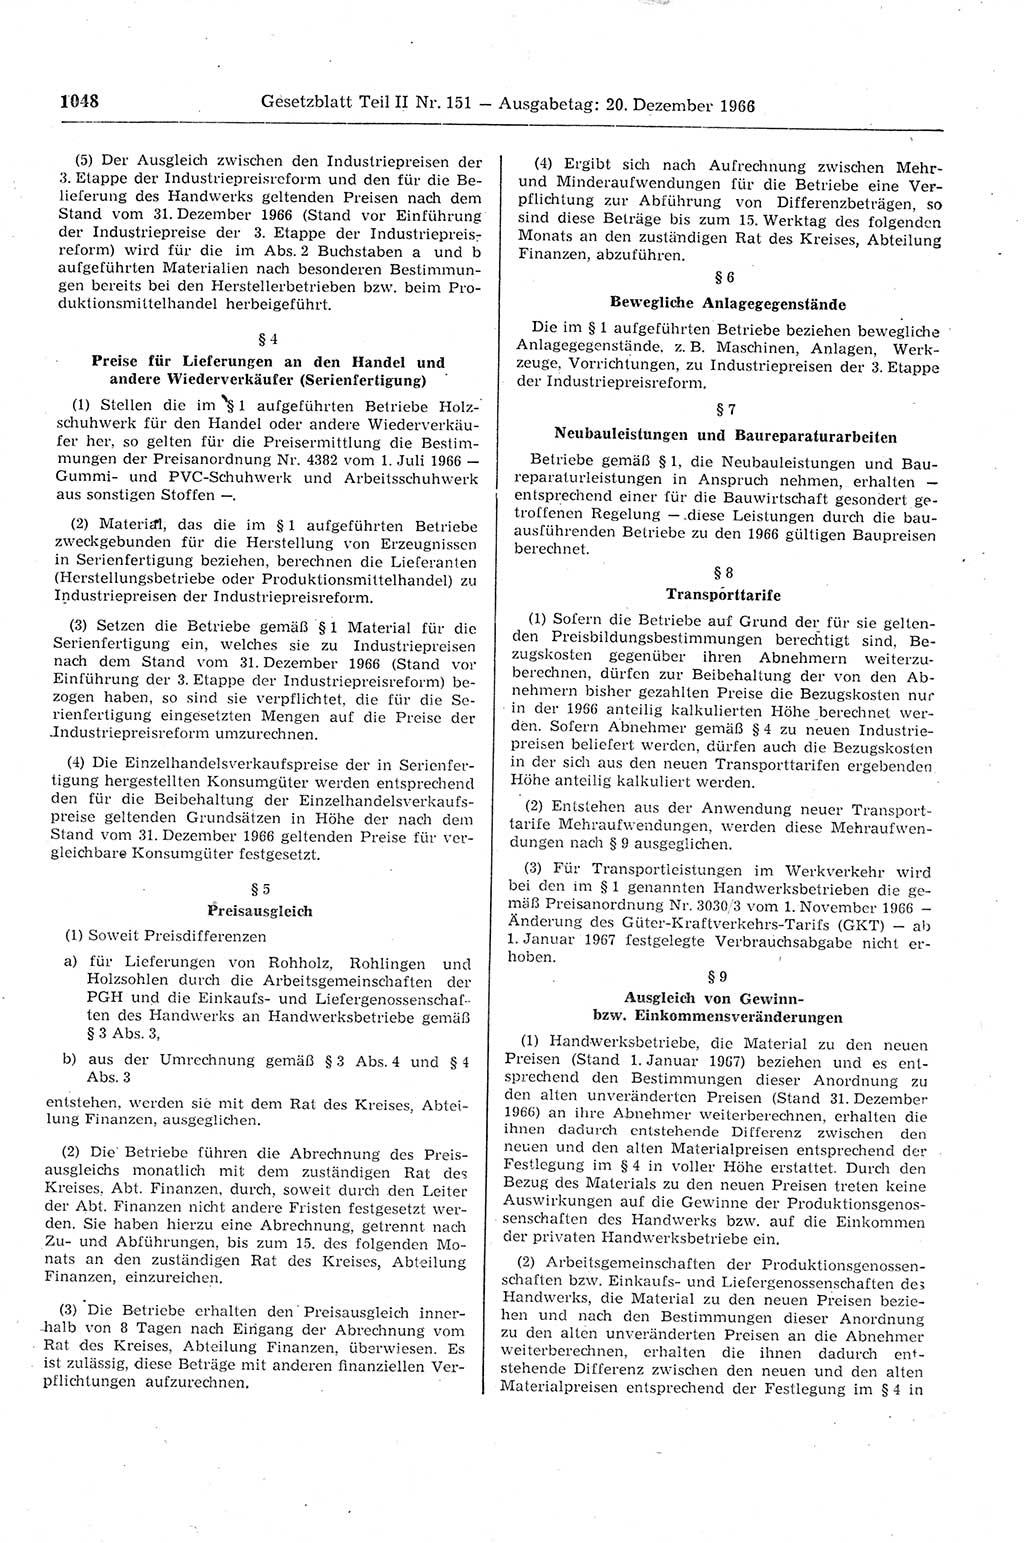 Gesetzblatt (GBl.) der Deutschen Demokratischen Republik (DDR) Teil ⅠⅠ 1966, Seite 1048 (GBl. DDR ⅠⅠ 1966, S. 1048)